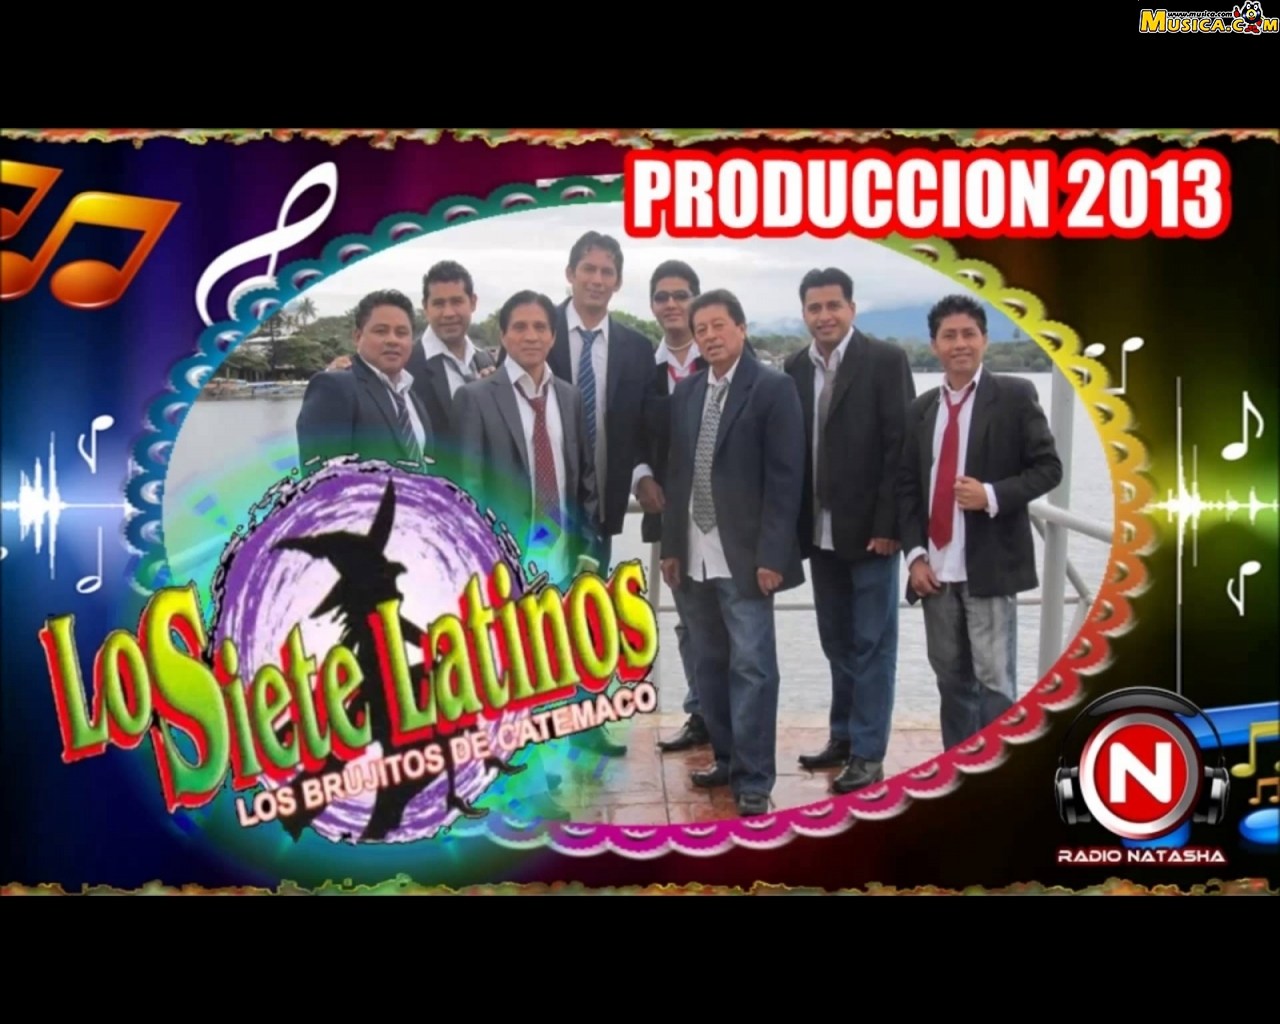 Fondo de pantalla de Los Siete Latinos